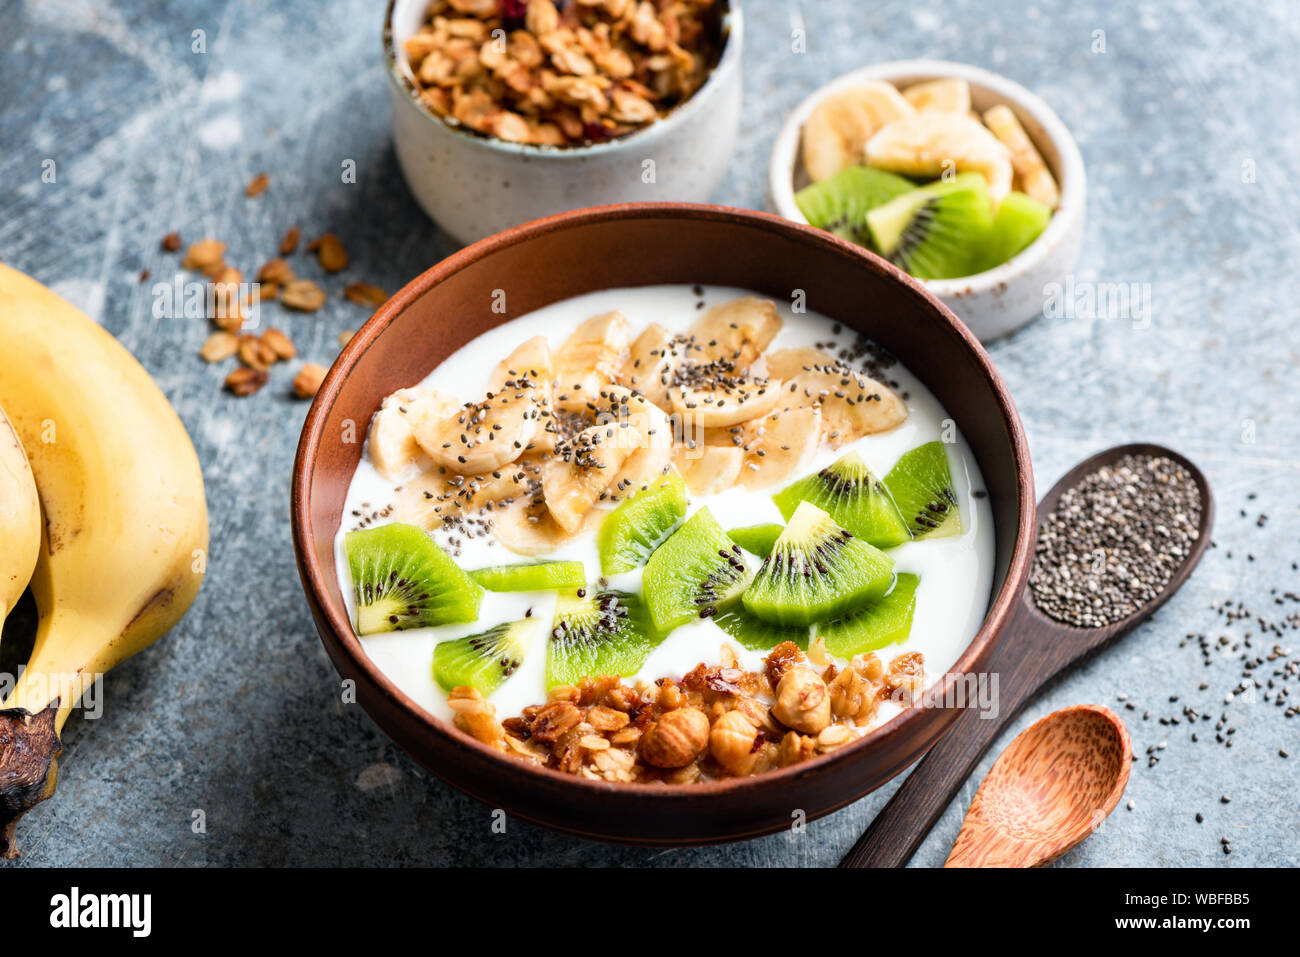 Obst Müsli Joghurt Schale mit Chia Samen für ein gesundes Frühstück oder einen Snack. Kiwi, Banane, Haferflocken Müsli und griechischer Joghurt in der Schüssel gemischt. Gesunde Ernährung Stockfoto